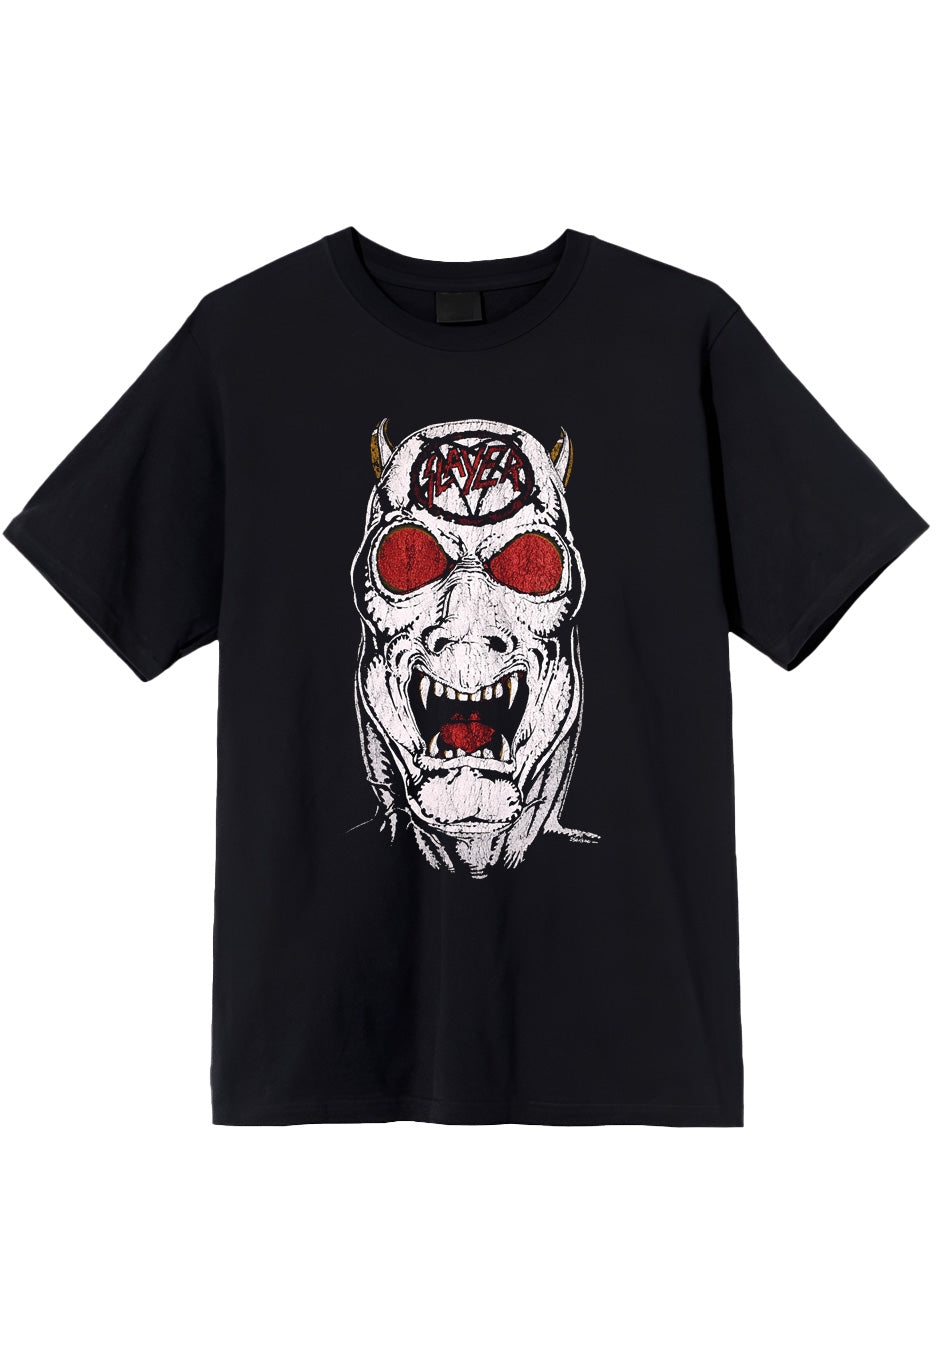 Slayer - RIB Criminally Insane - T-Shirt